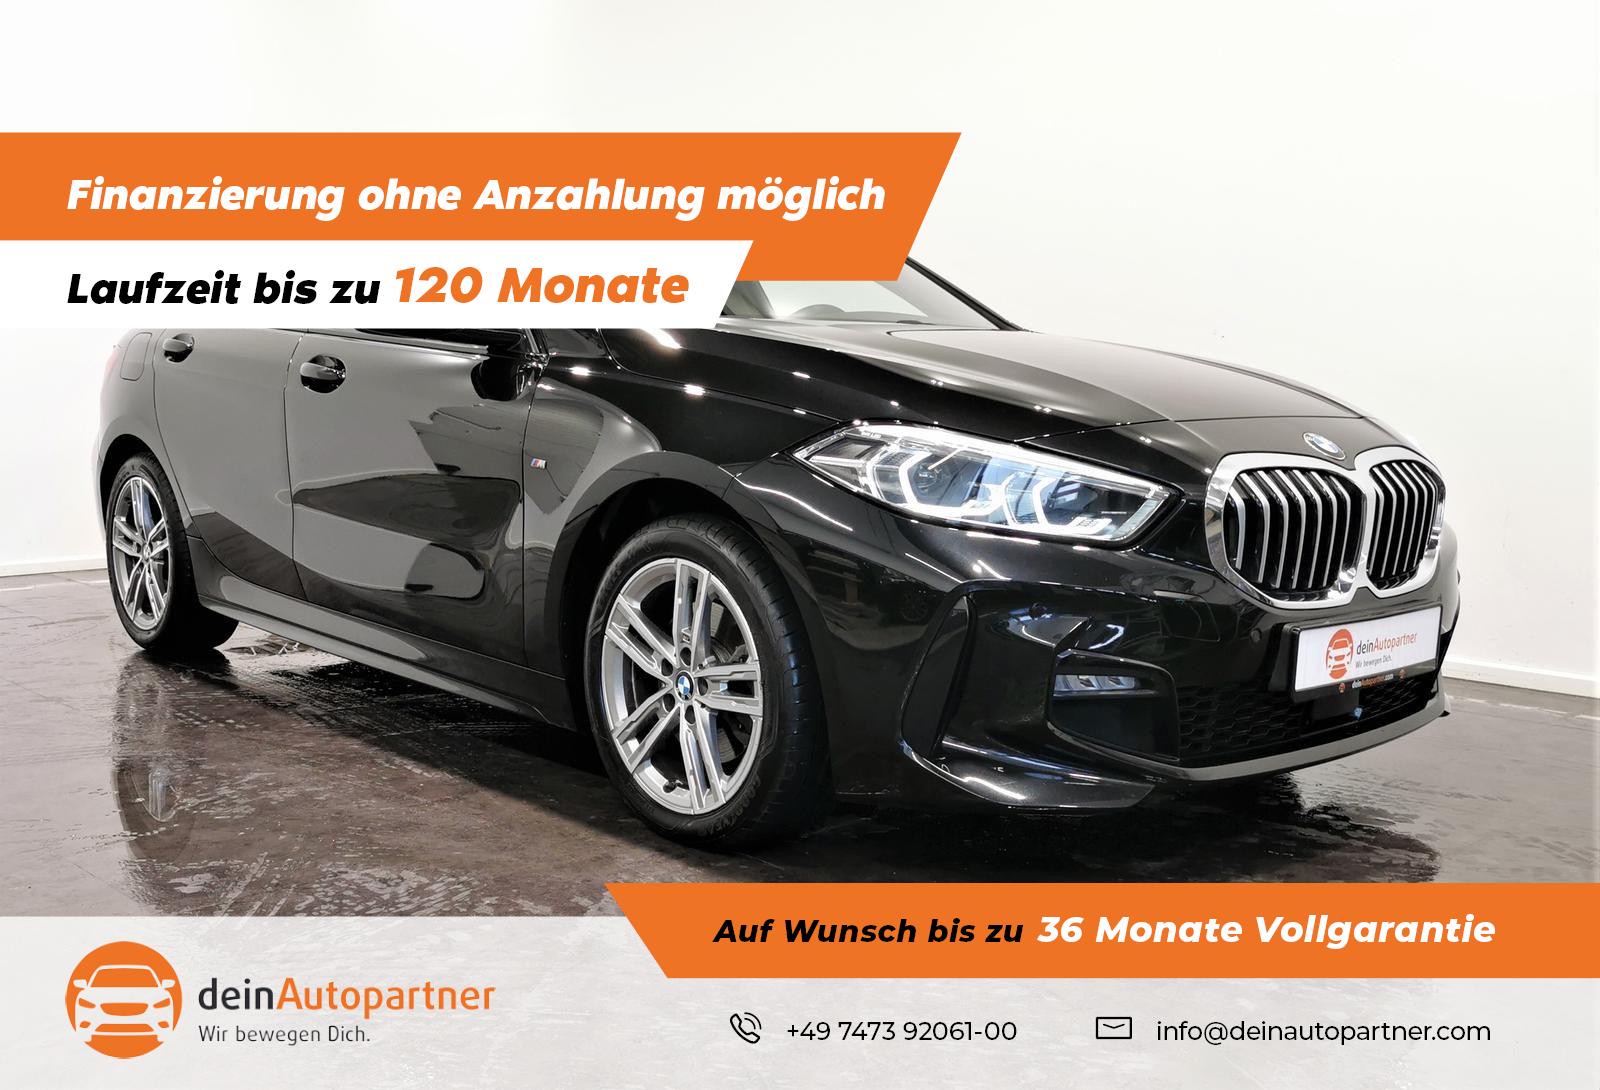 BMW 116 i Limo M Sport gebraucht kaufen in Mössingen Preis 24950 eur -  Int.Nr.: J18994